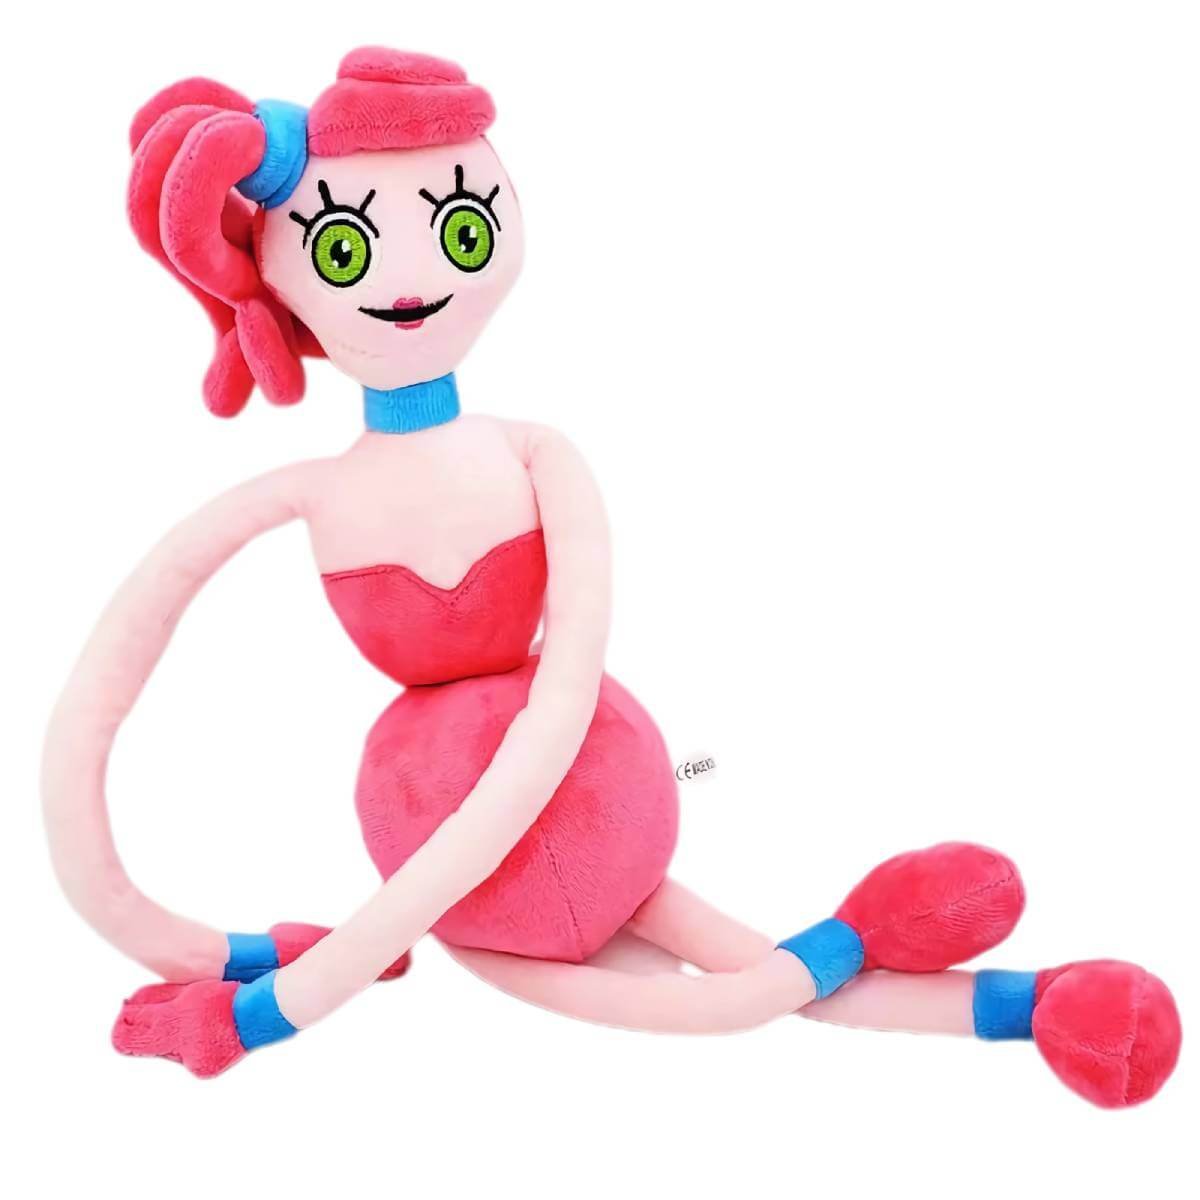 Poppy Playtime Mommy Long Legs Plush Toy